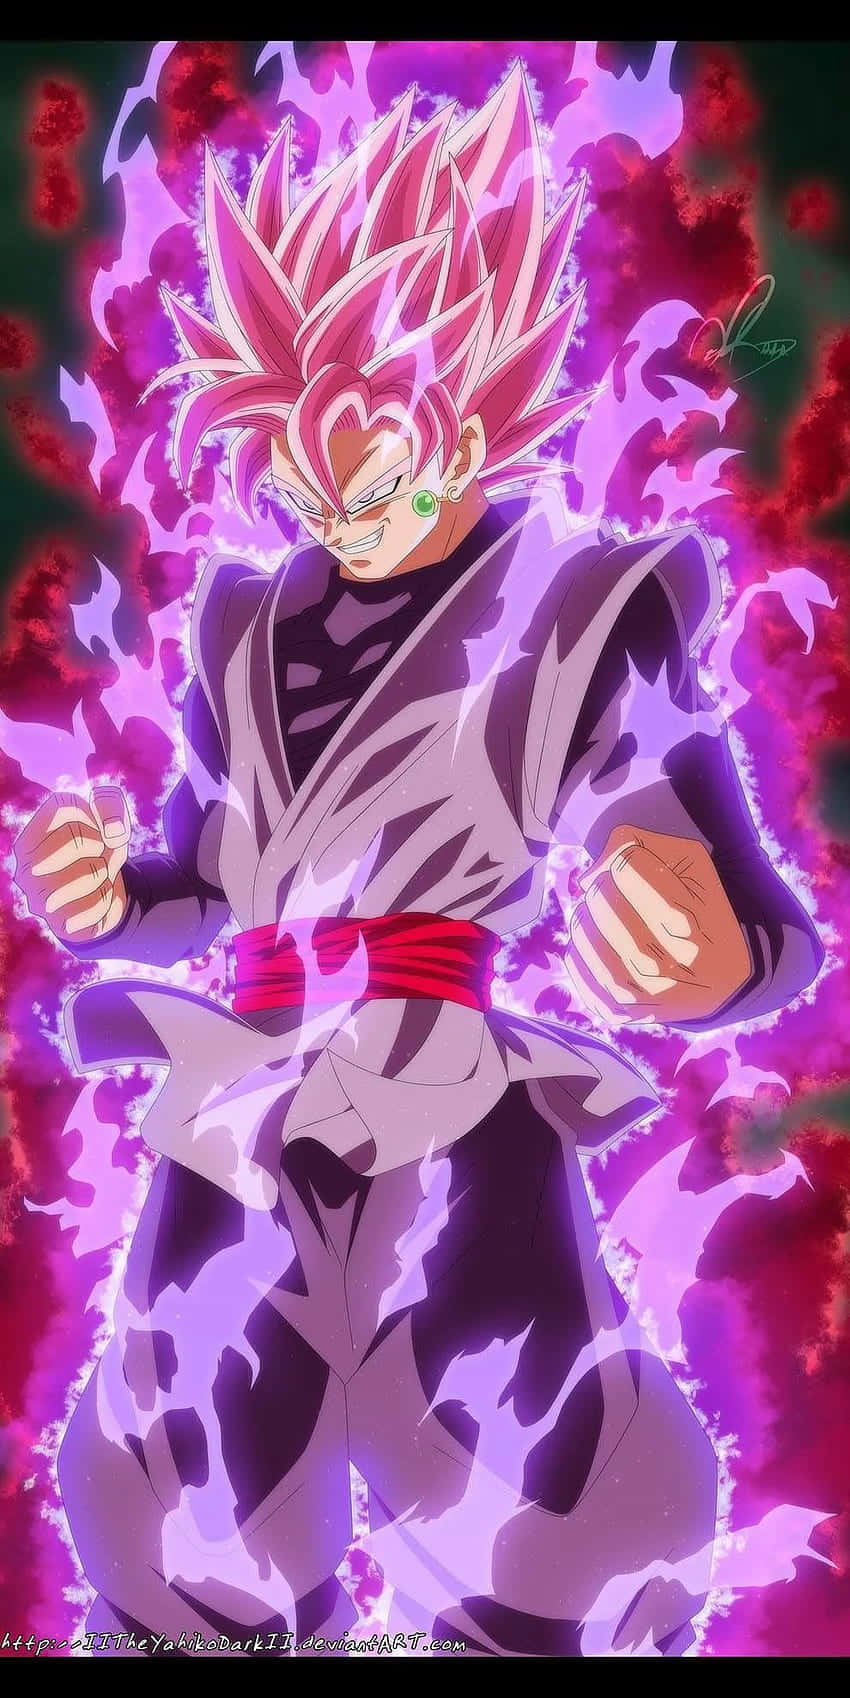 Ilmisterioso E Potente Goku Black Nella Sua Posizione Feroce